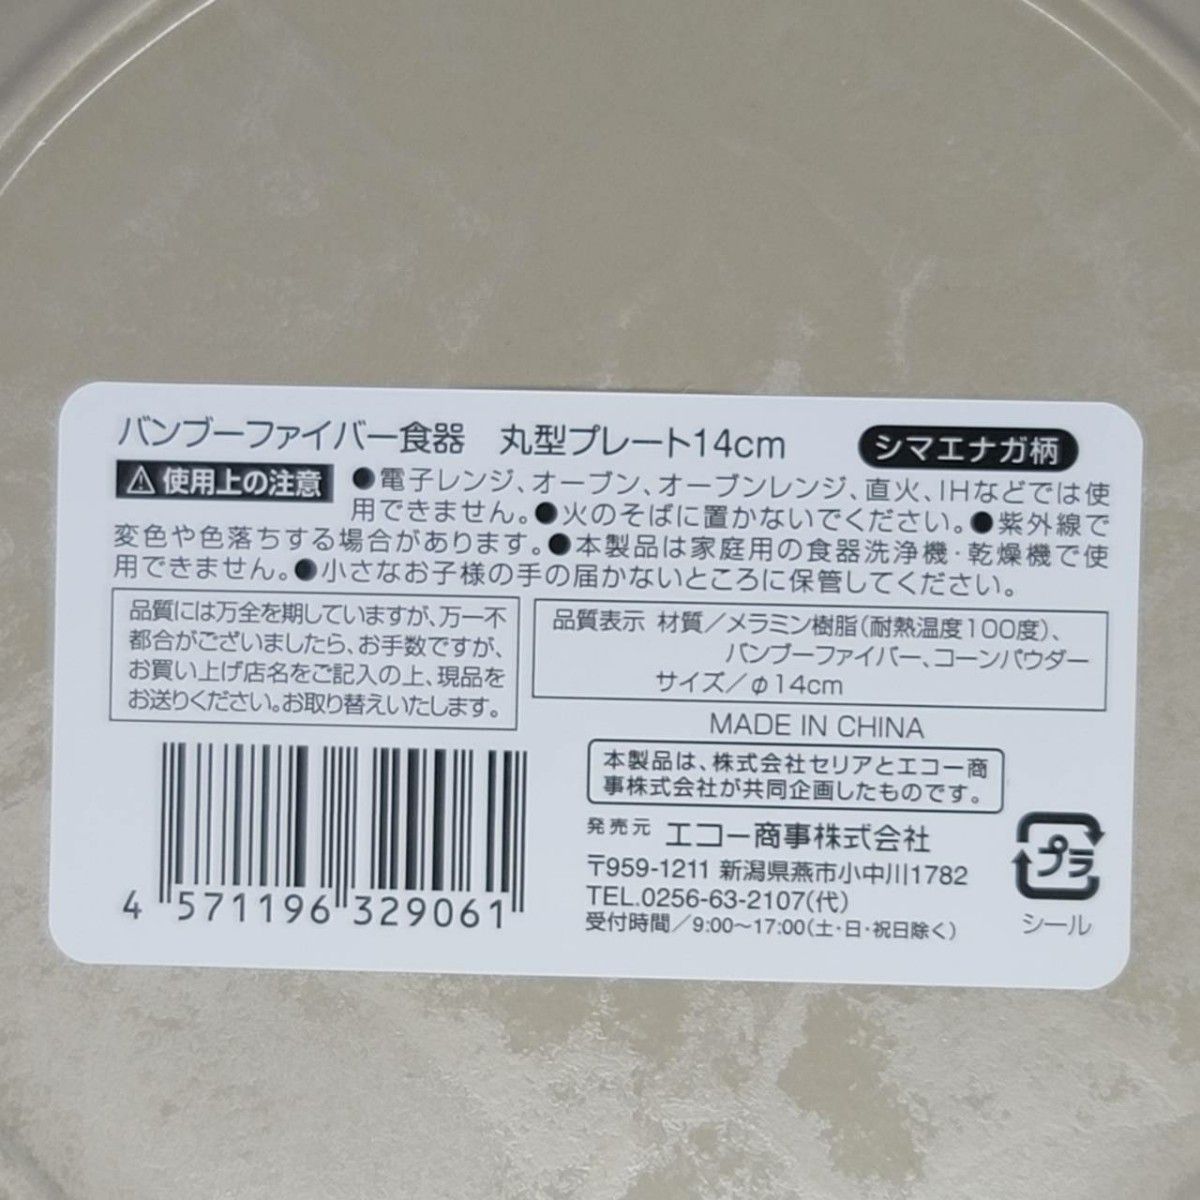 【訳あり】シマエナガ バンブーファイバー食器 丸型プレート 14cm